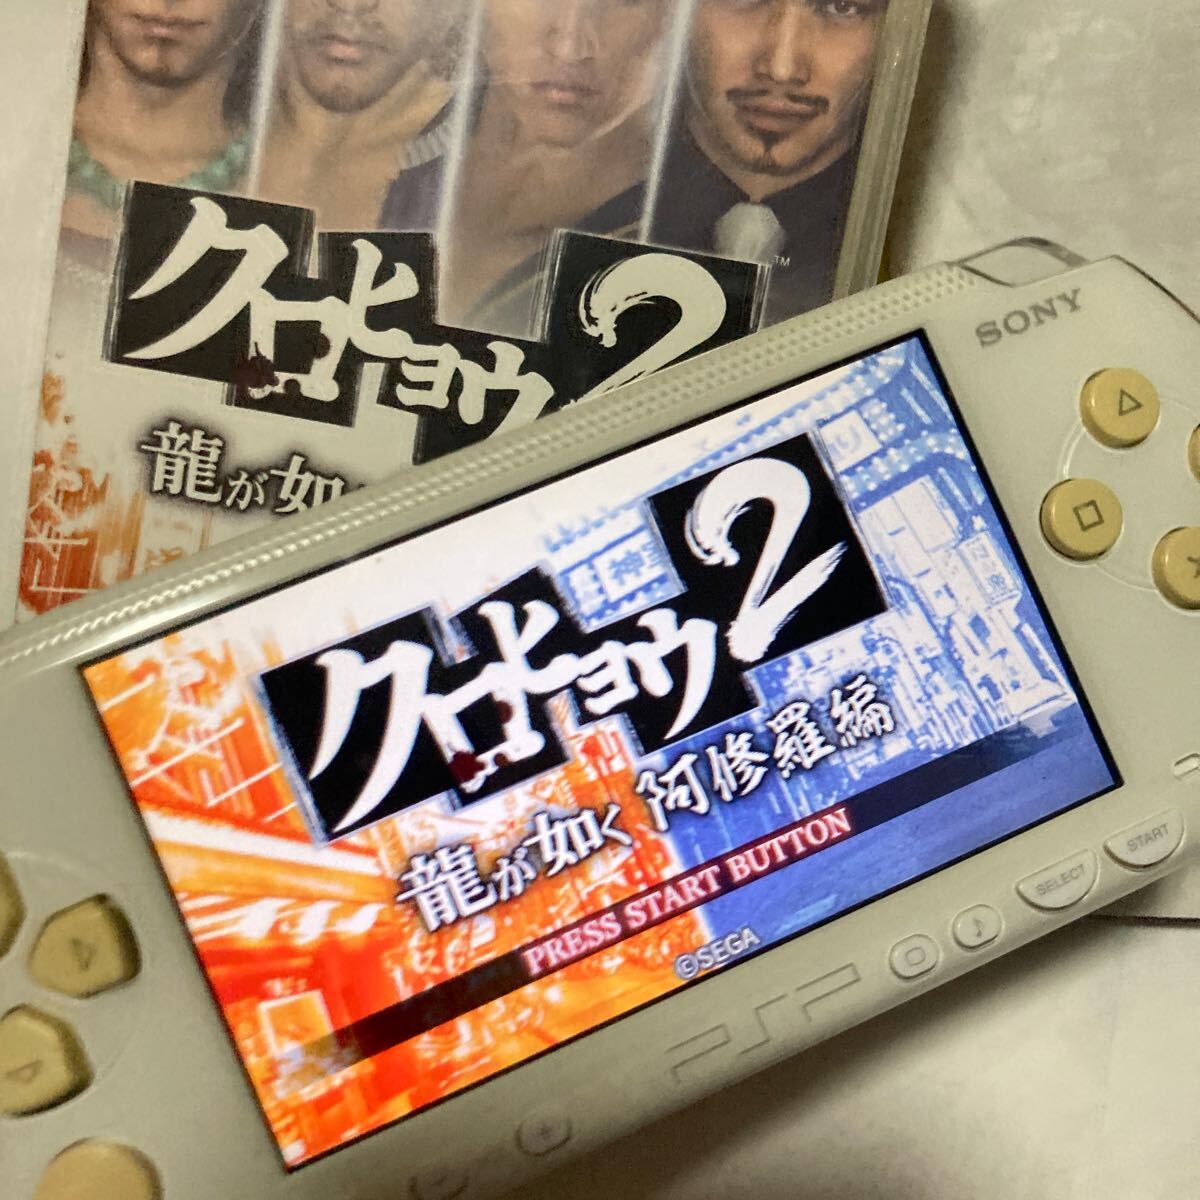 送料無料 PSP クロヒョウ2 龍が如く 阿修羅編 PlayStation Portable プレイステーションポータブル PSPソフト_画像2